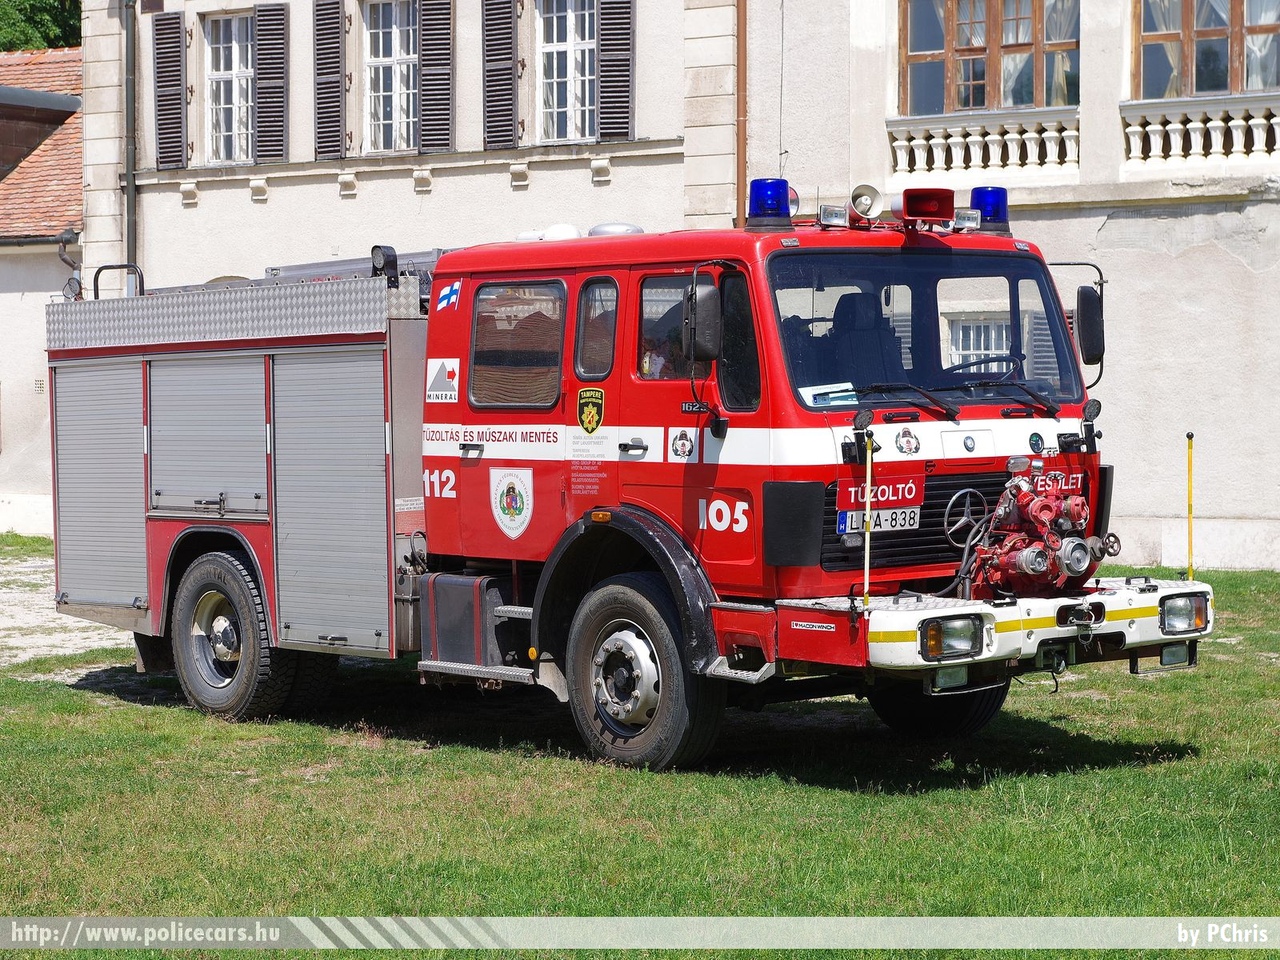 Mercedes-Benz 1625, Iszkaszentgyörgyi Önkéntes Tûzoltó Egyesület, fotó: PChris
Keywords: tûzoltó tûzoltóautó tûzoltóság magyar Magyarország ÖTE hungarian Hungary fire firetruck LPA-838